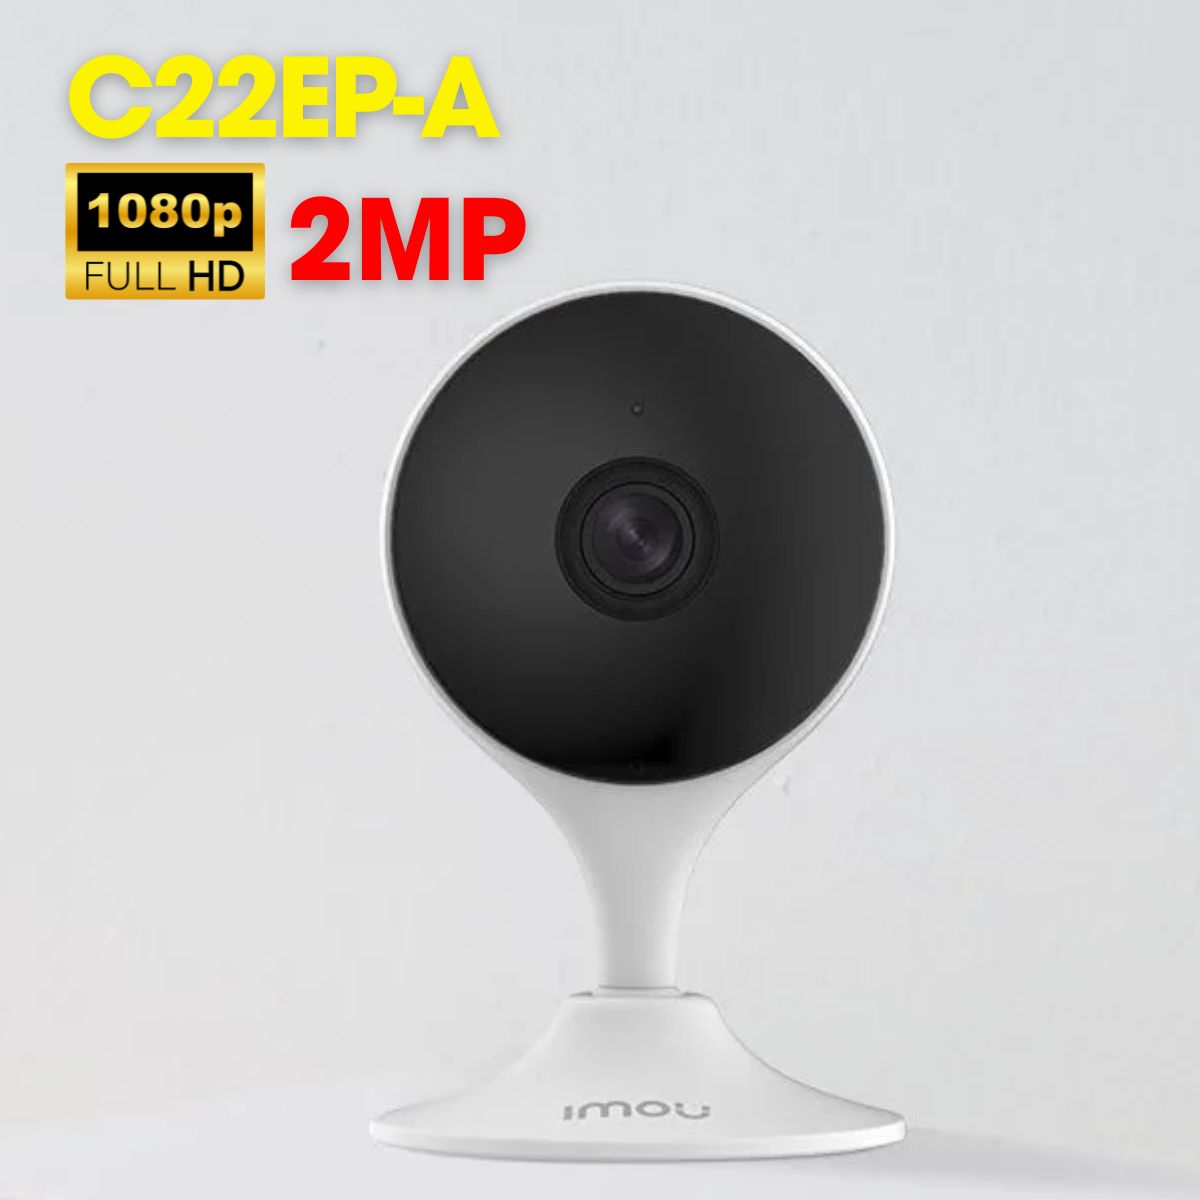 Camera Cue IMOU C22EP-A 2MP, hồng ngoại 10m, tích hợp mic và loa, còi báo động